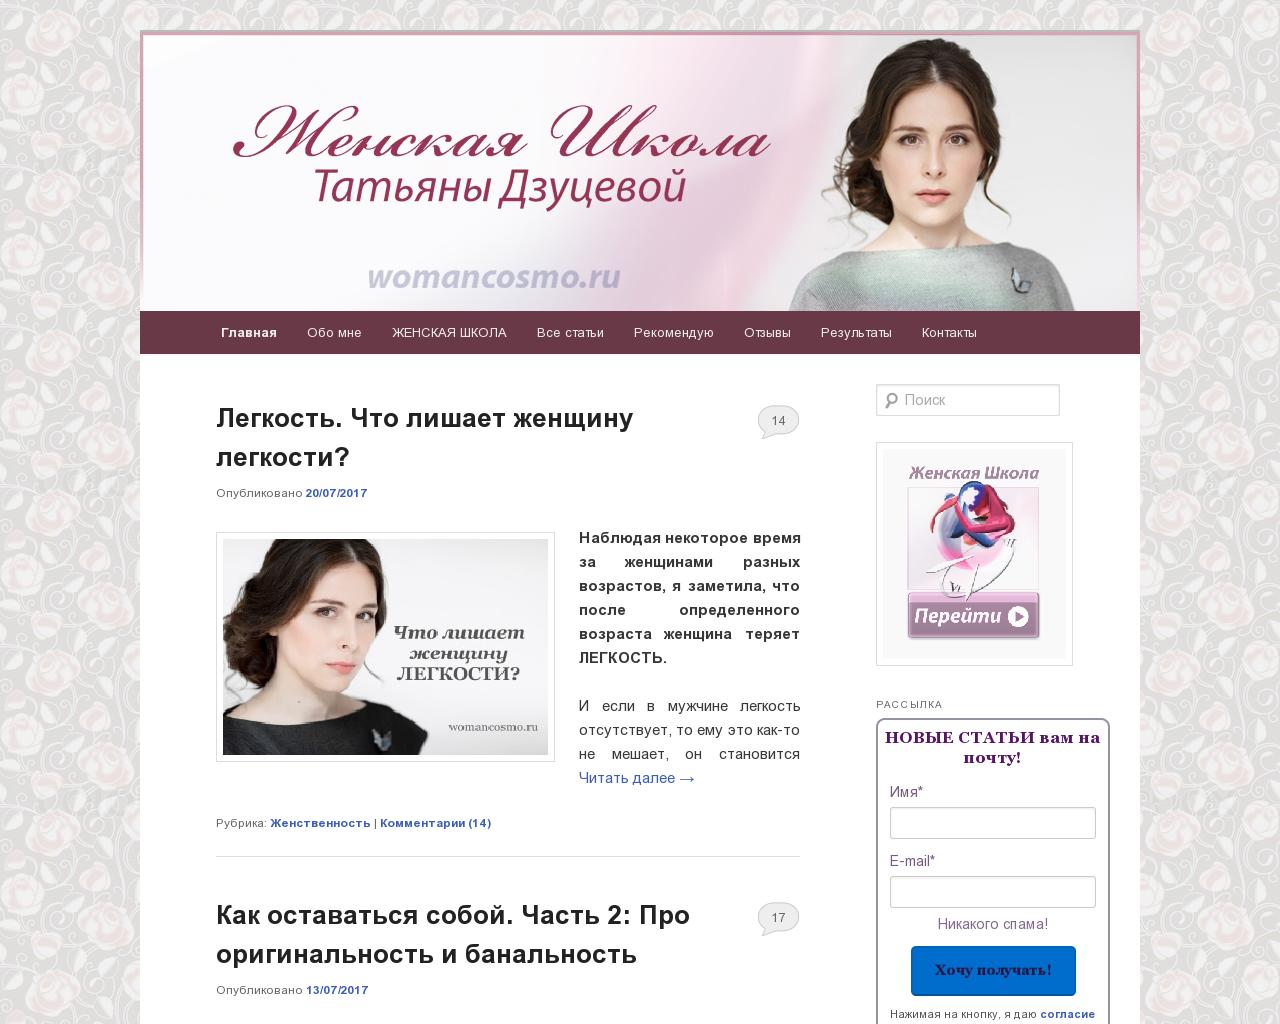 Изображение сайта womancosmo.ru в разрешении 1280x1024